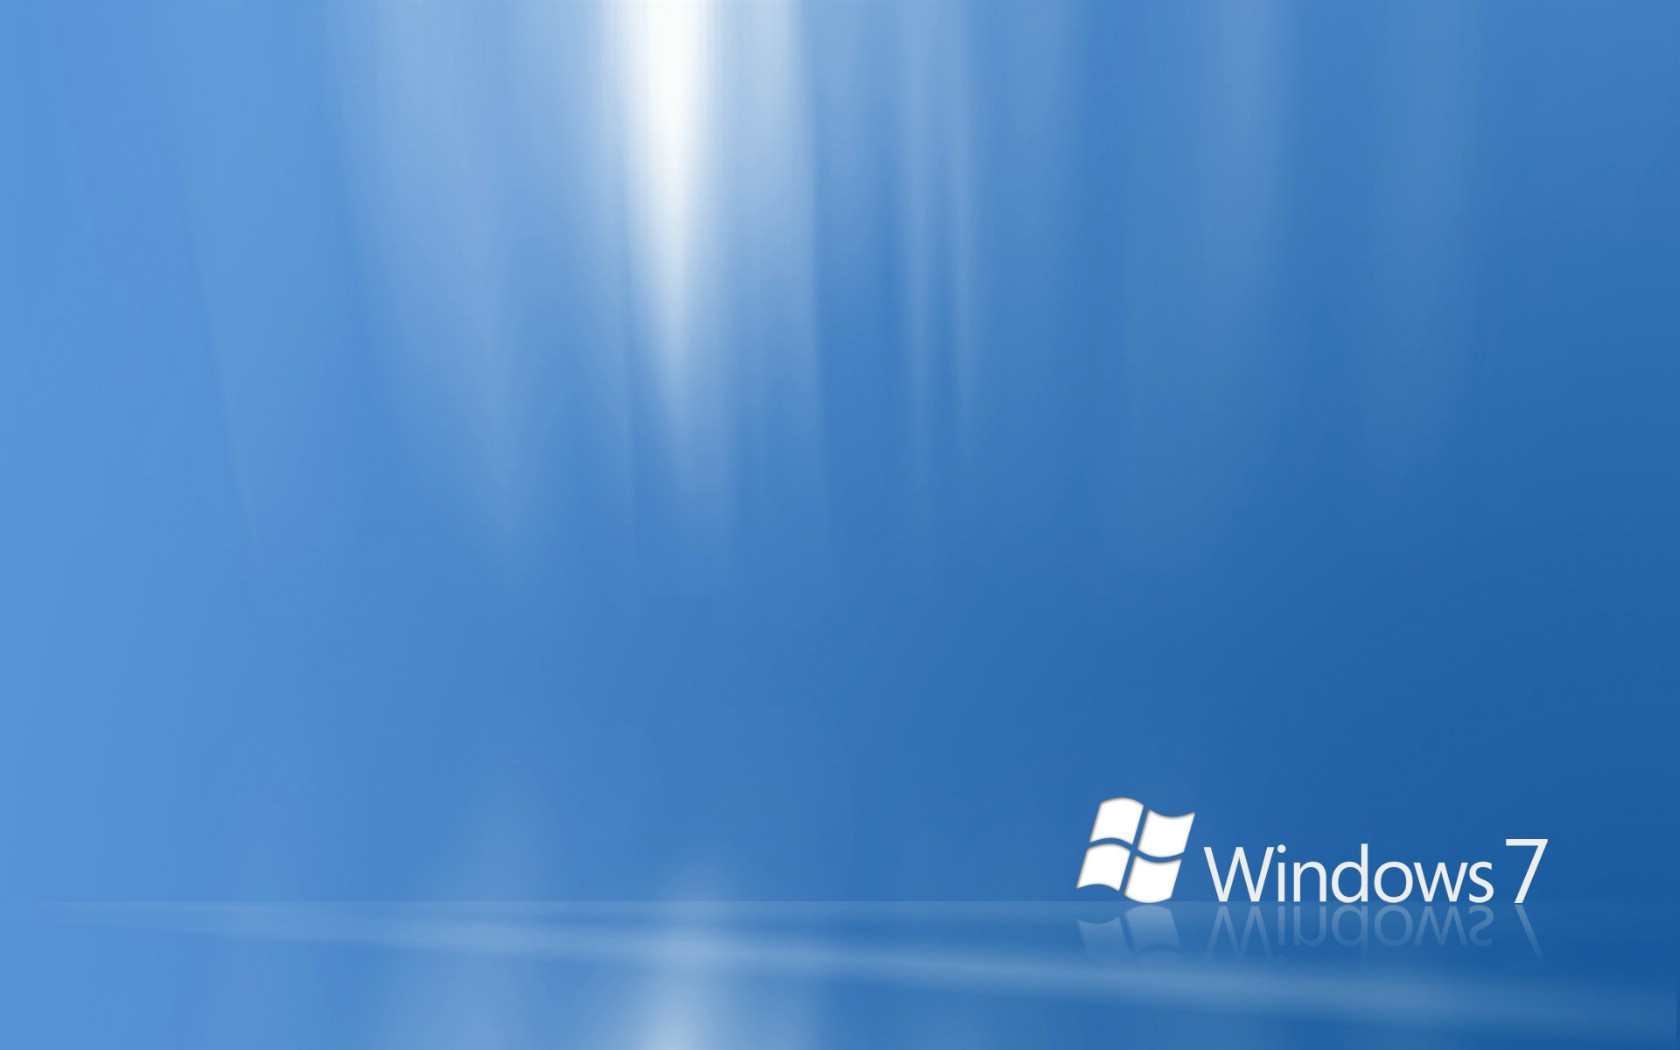 壁纸1680x1050Windows7 5 4壁纸 Windows7壁纸 Windows7图片 Windows7素材 系统壁纸 系统图库 系统图片素材桌面壁纸